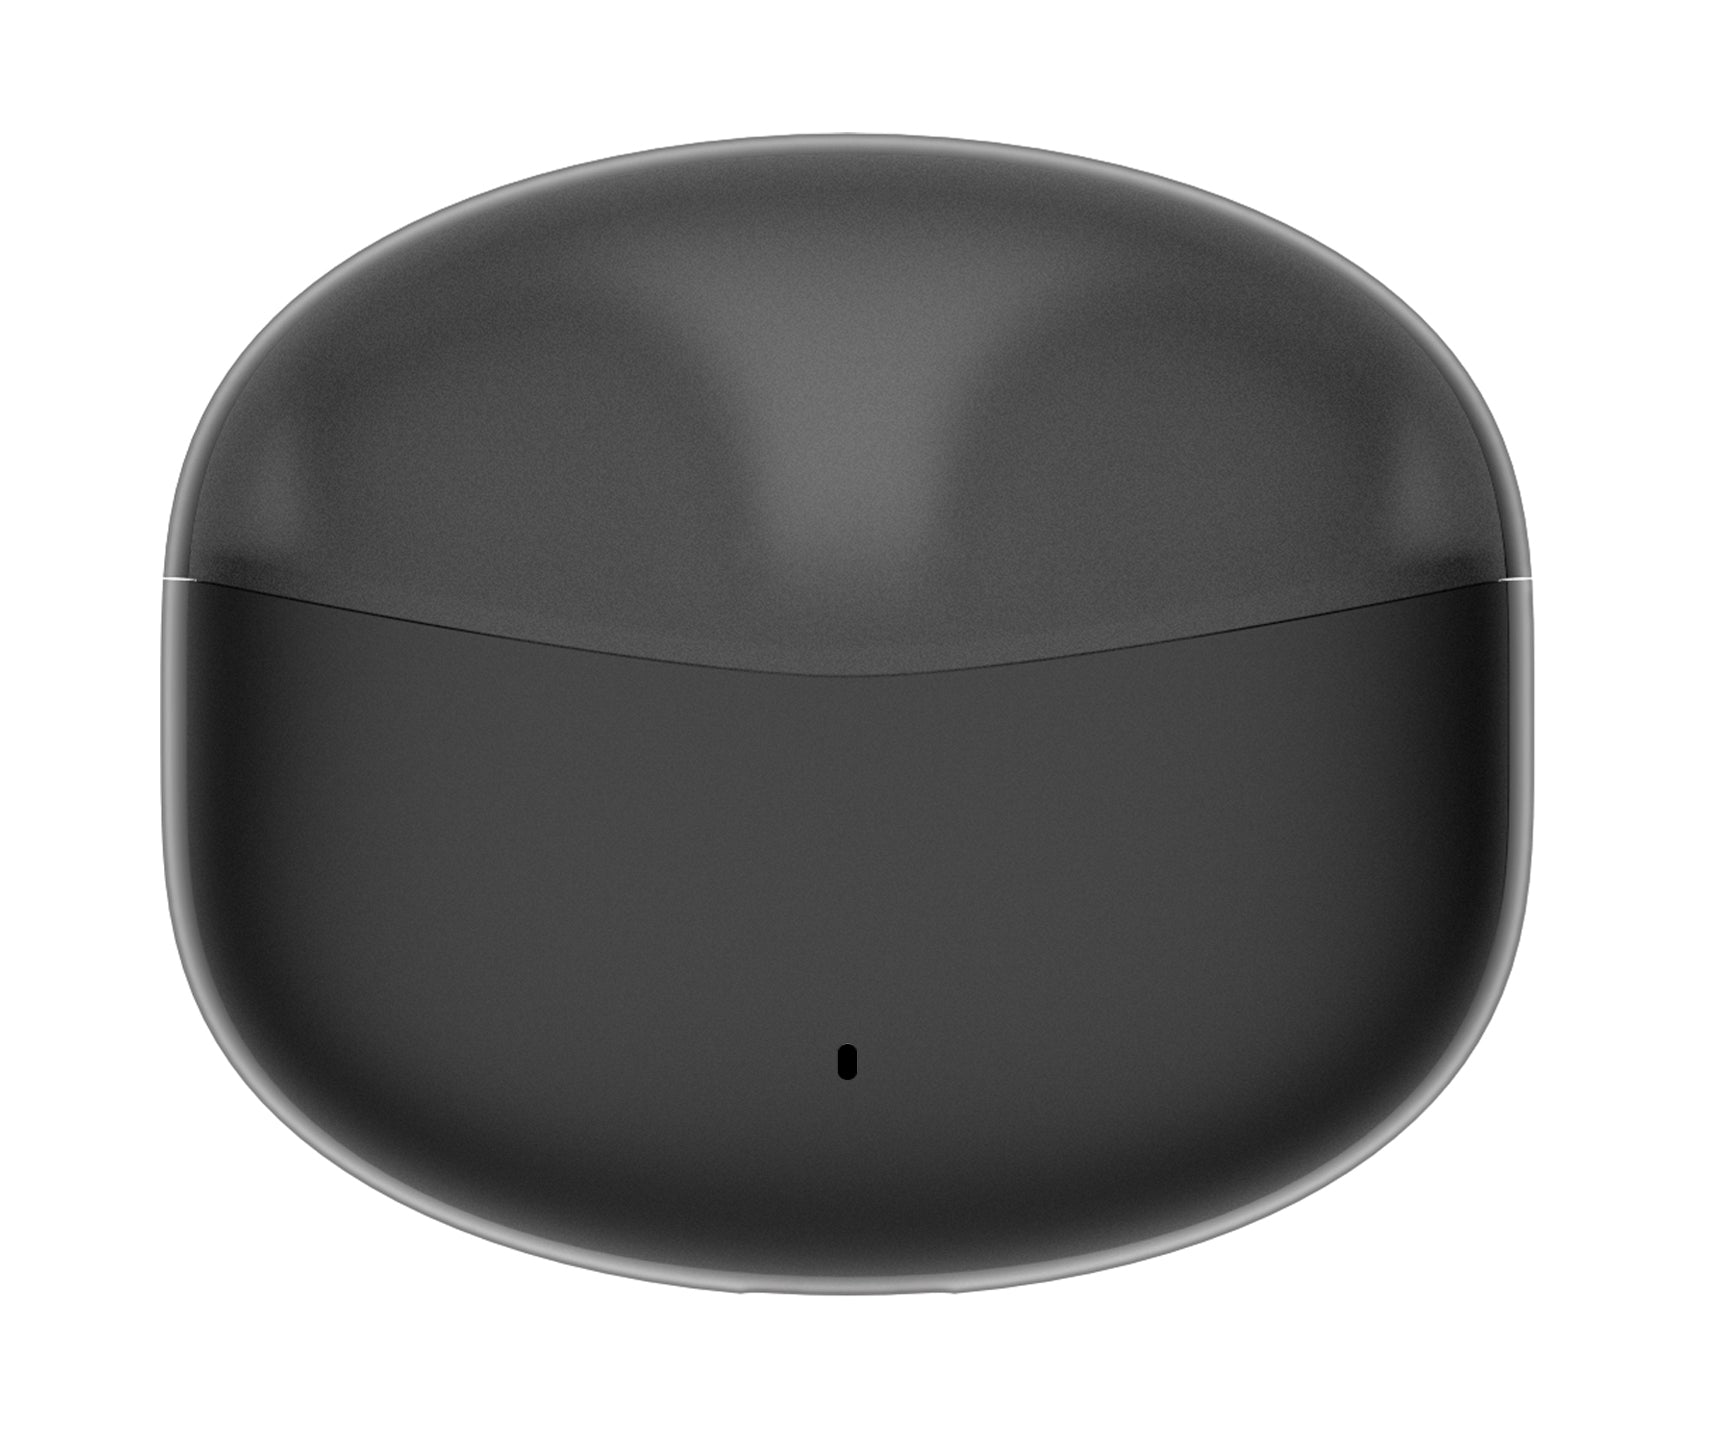 Edifier X2s True Wireless Semi-In-Ear Bluetooth Earbuds With Mic - Black